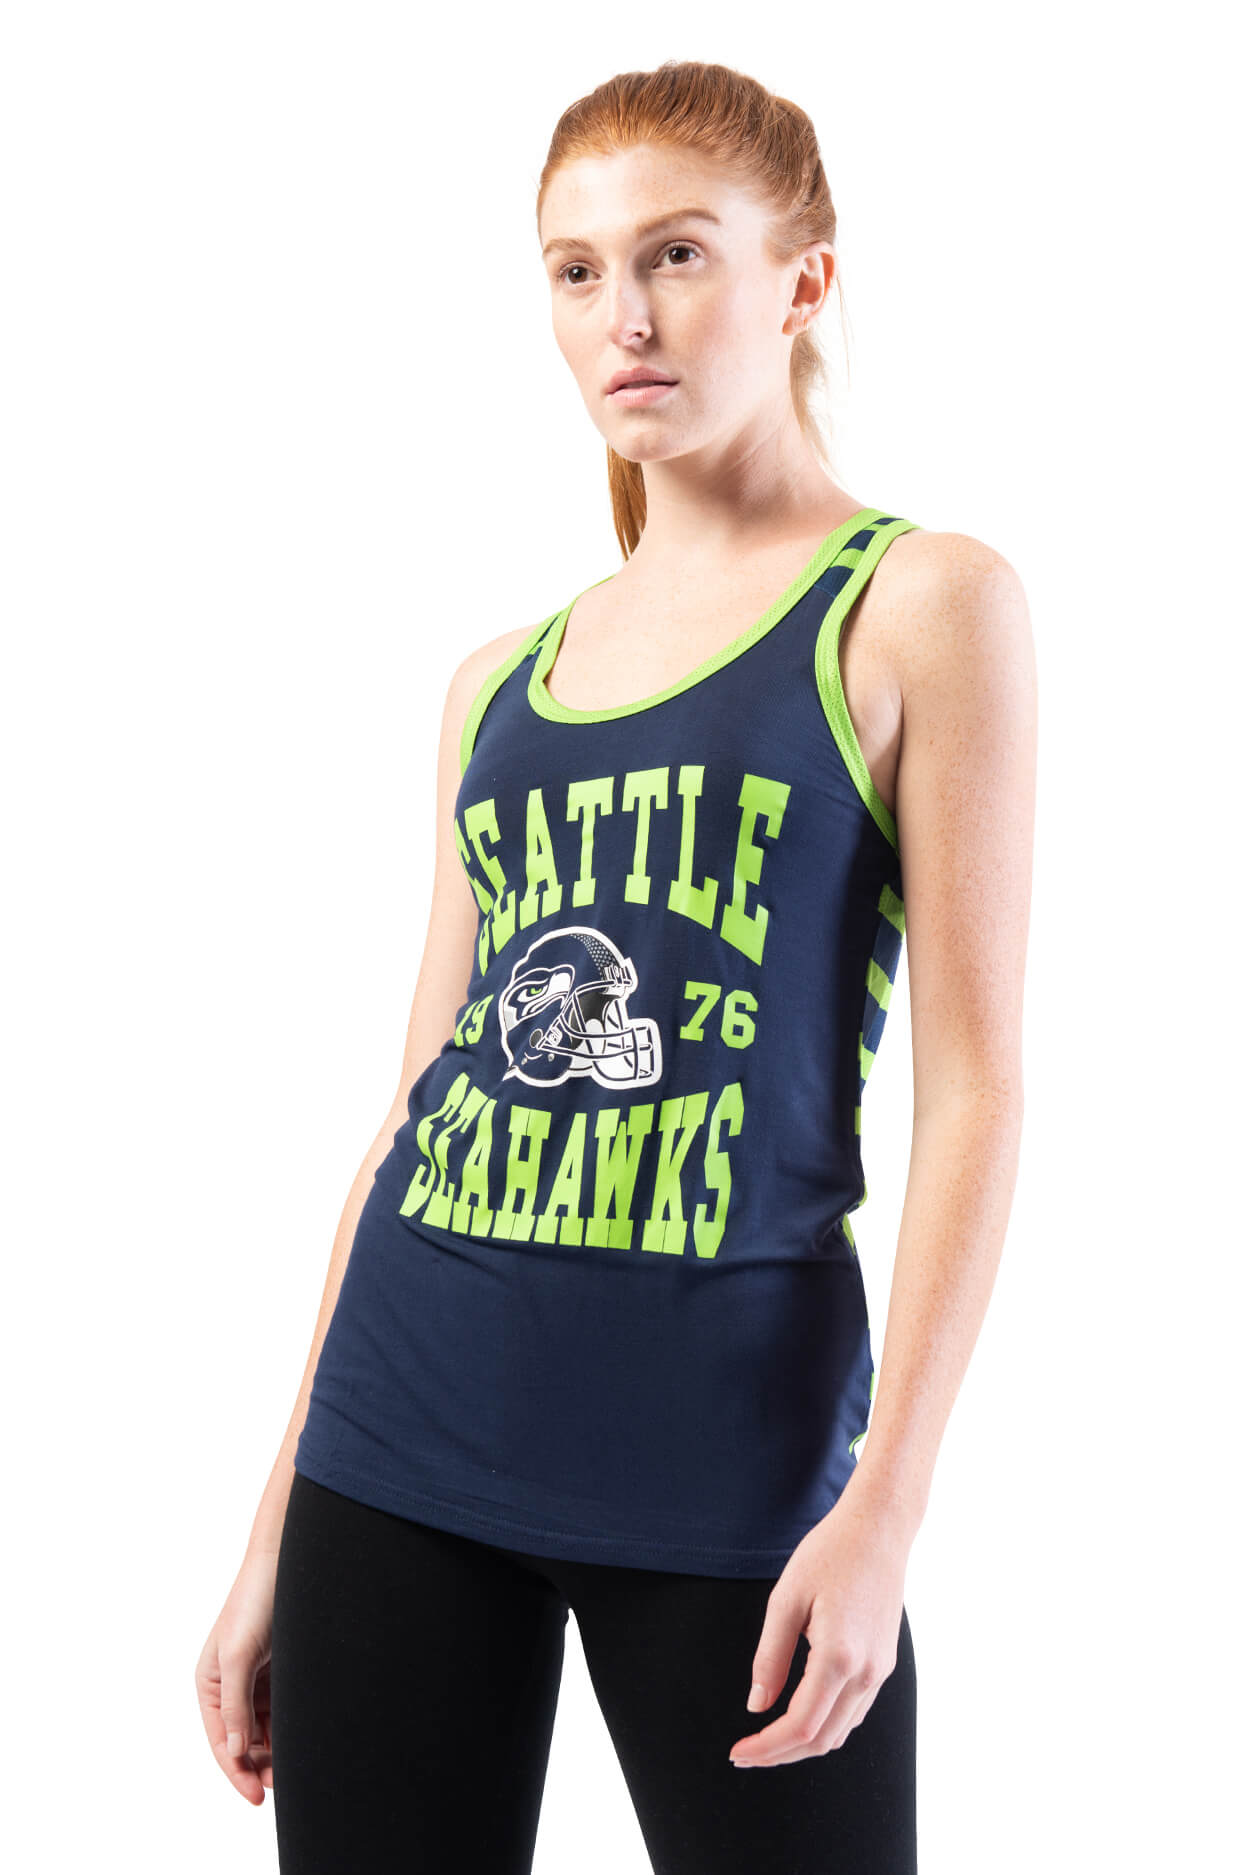 NFL Seattle Seahawks Women's Jersey Tank Top|Seattle Seahawks